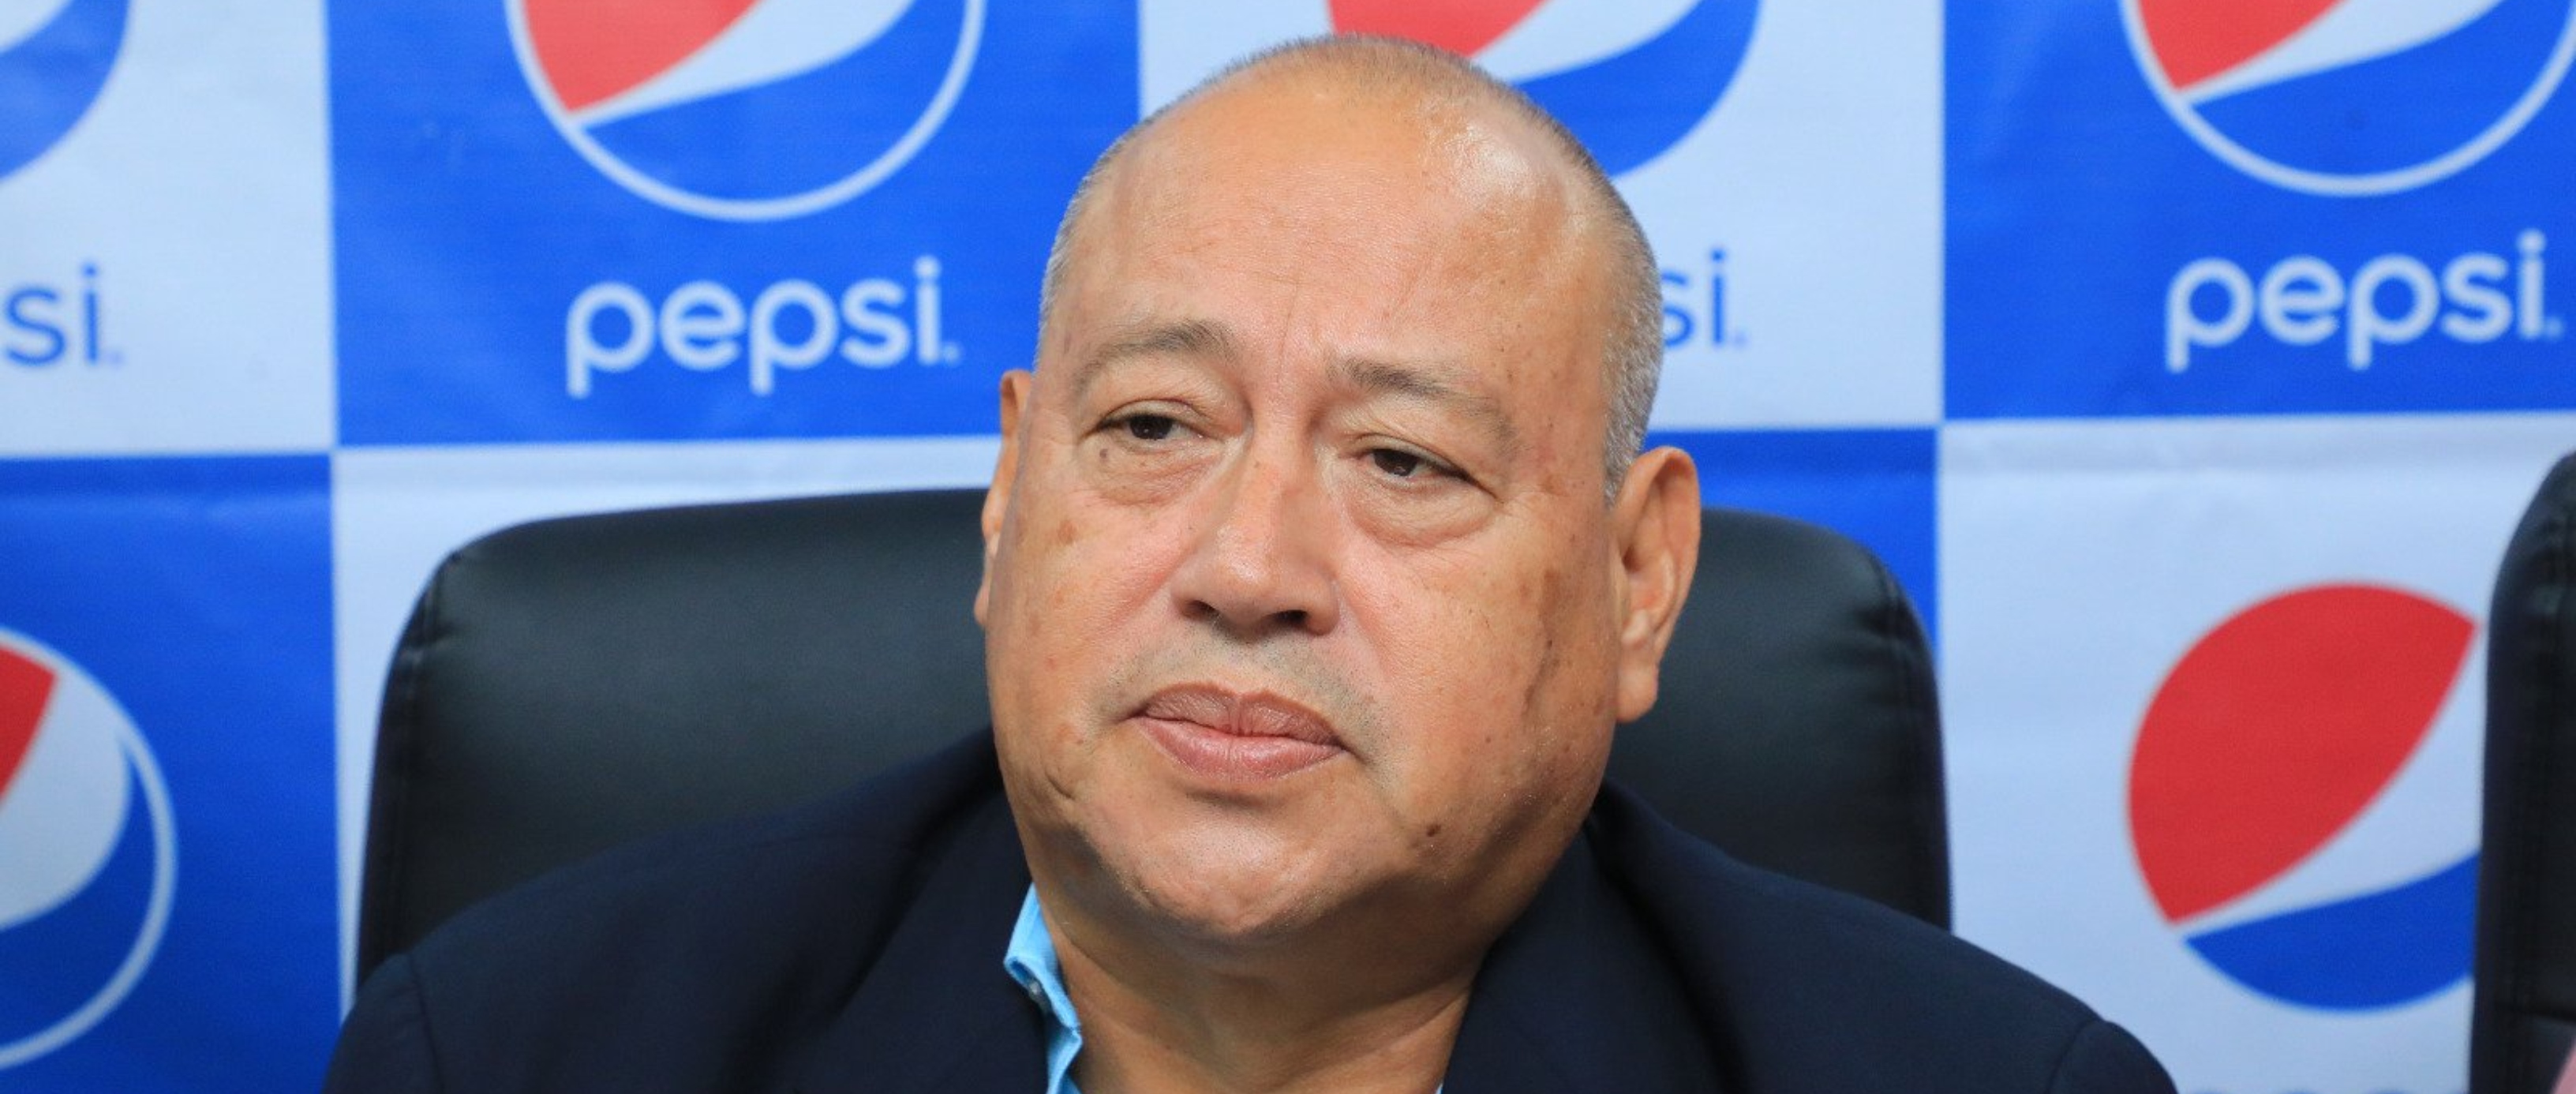 La Primera División colaborará con el nuevo técnico de la Selecta, dice su presidente